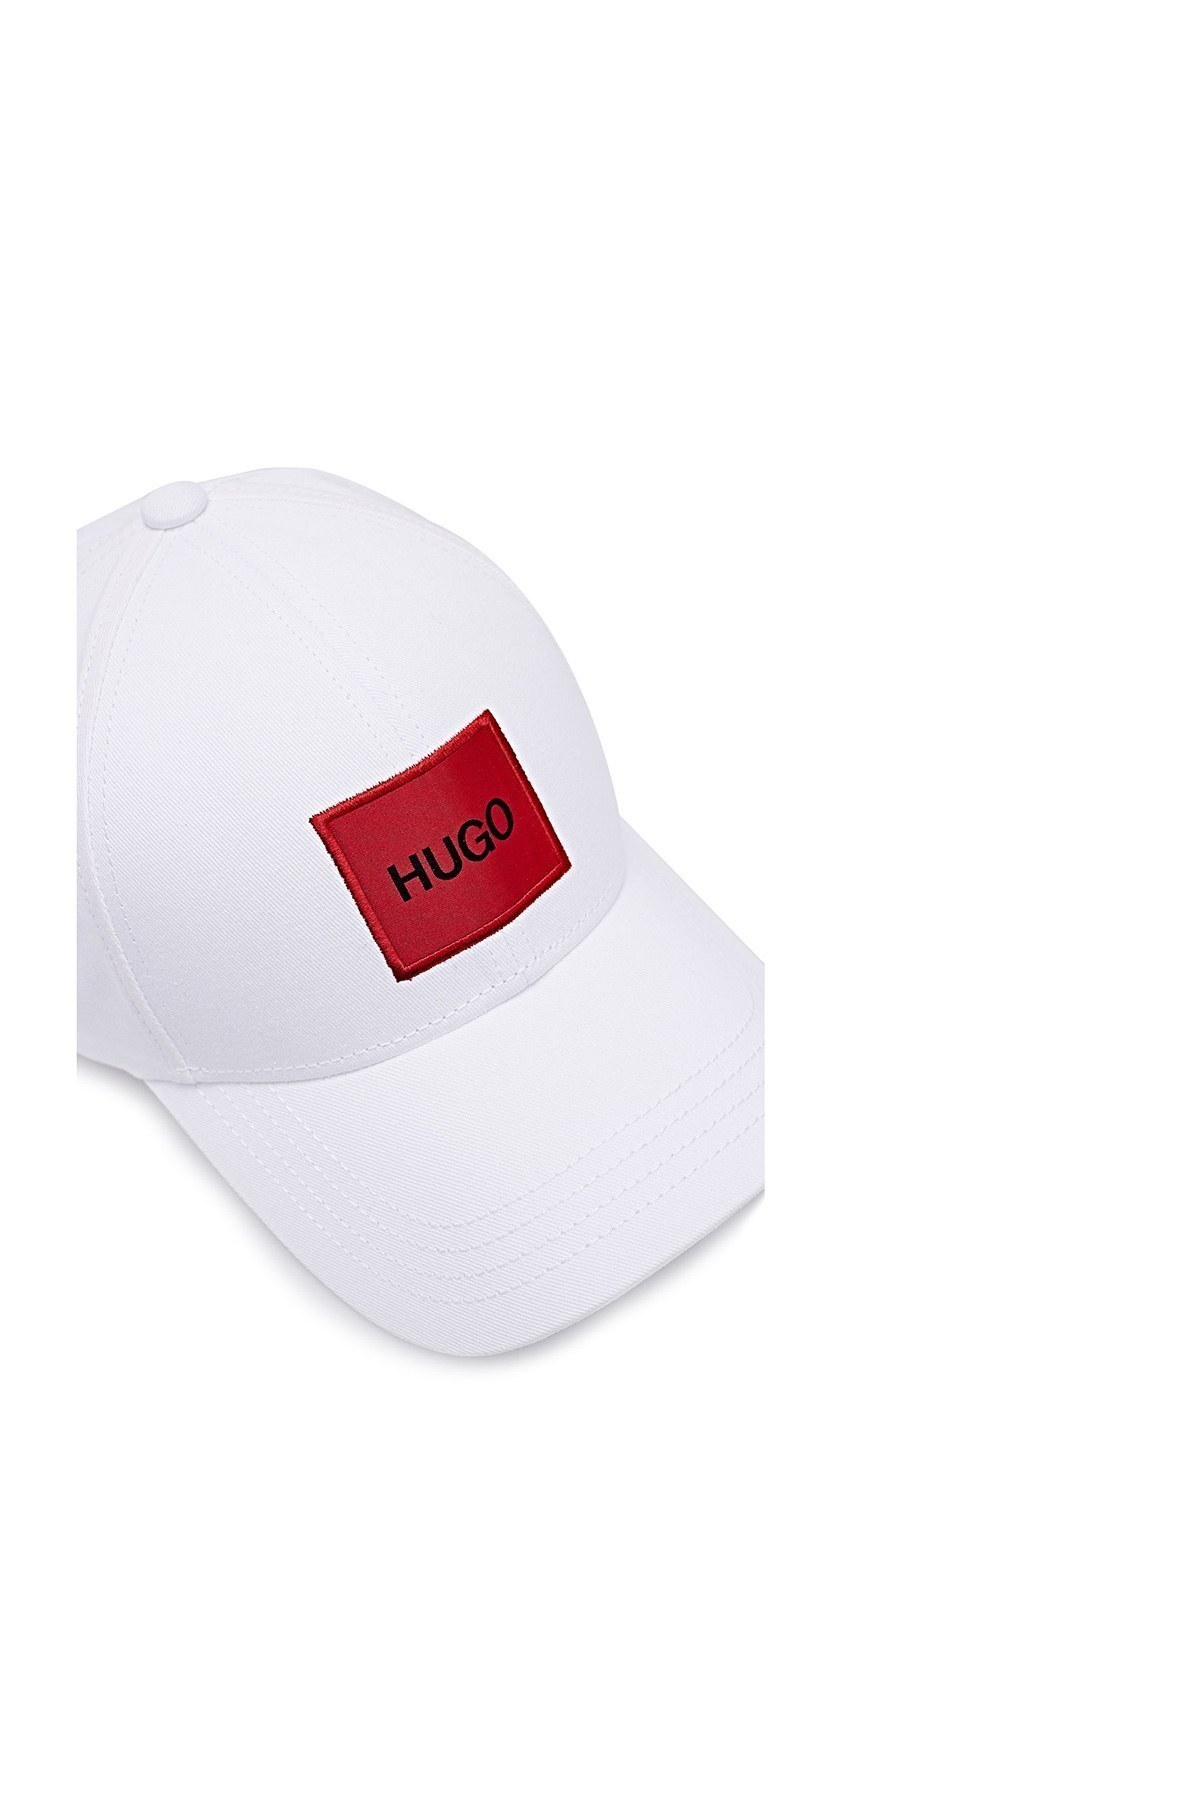 Hugo Boss Baskılı % 100 Pamuk Erkek Şapka 50449455 100 BEYAZ